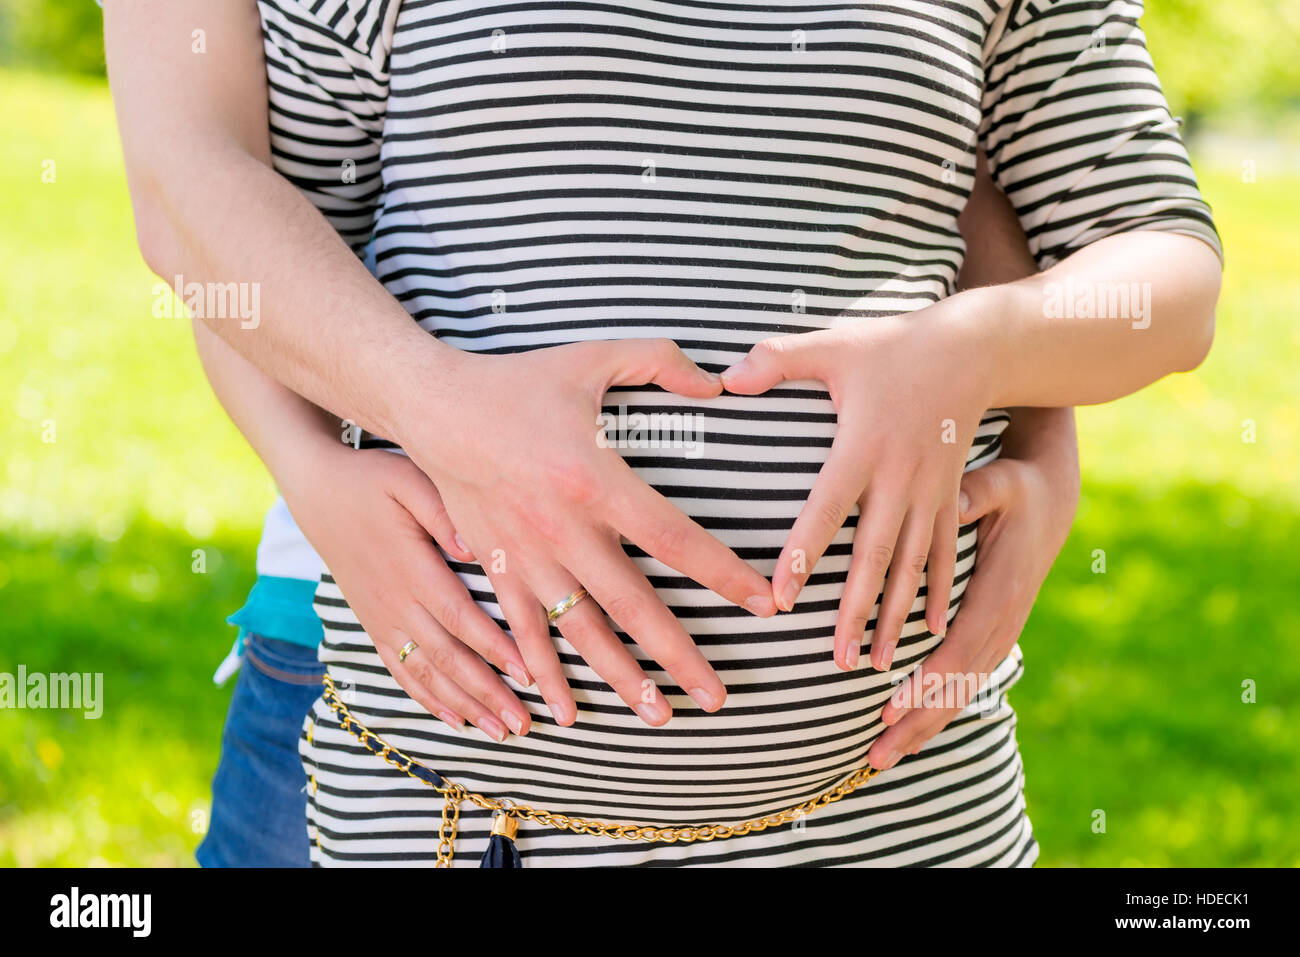 Gravidanza la pancia e le mani in una forma di cuore sul ventre madre in attesa Foto Stock